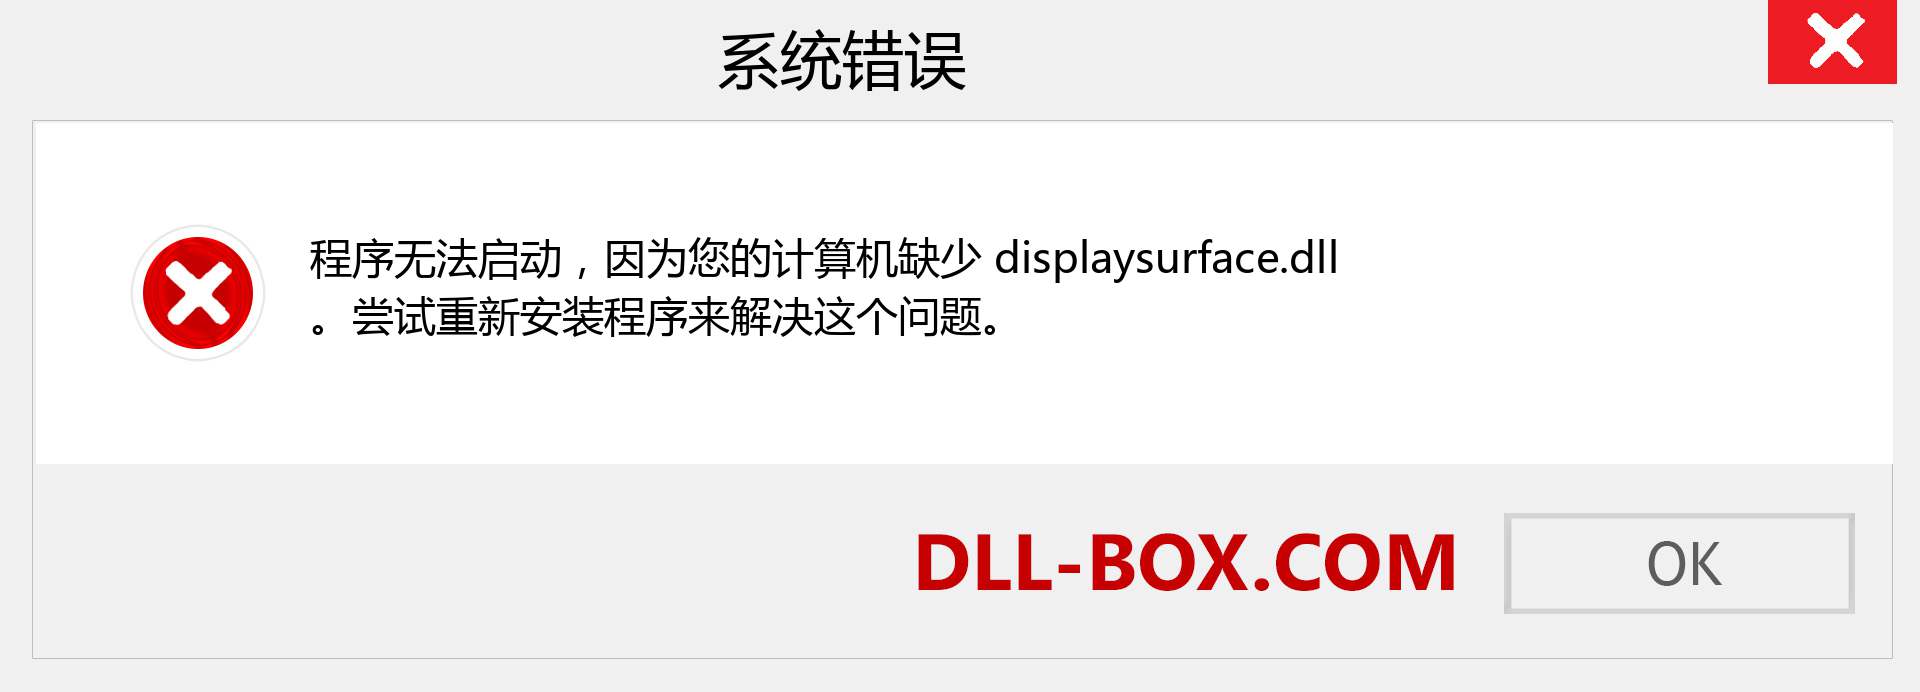 displaysurface.dll 文件丢失？。 适用于 Windows 7、8、10 的下载 - 修复 Windows、照片、图像上的 displaysurface dll 丢失错误